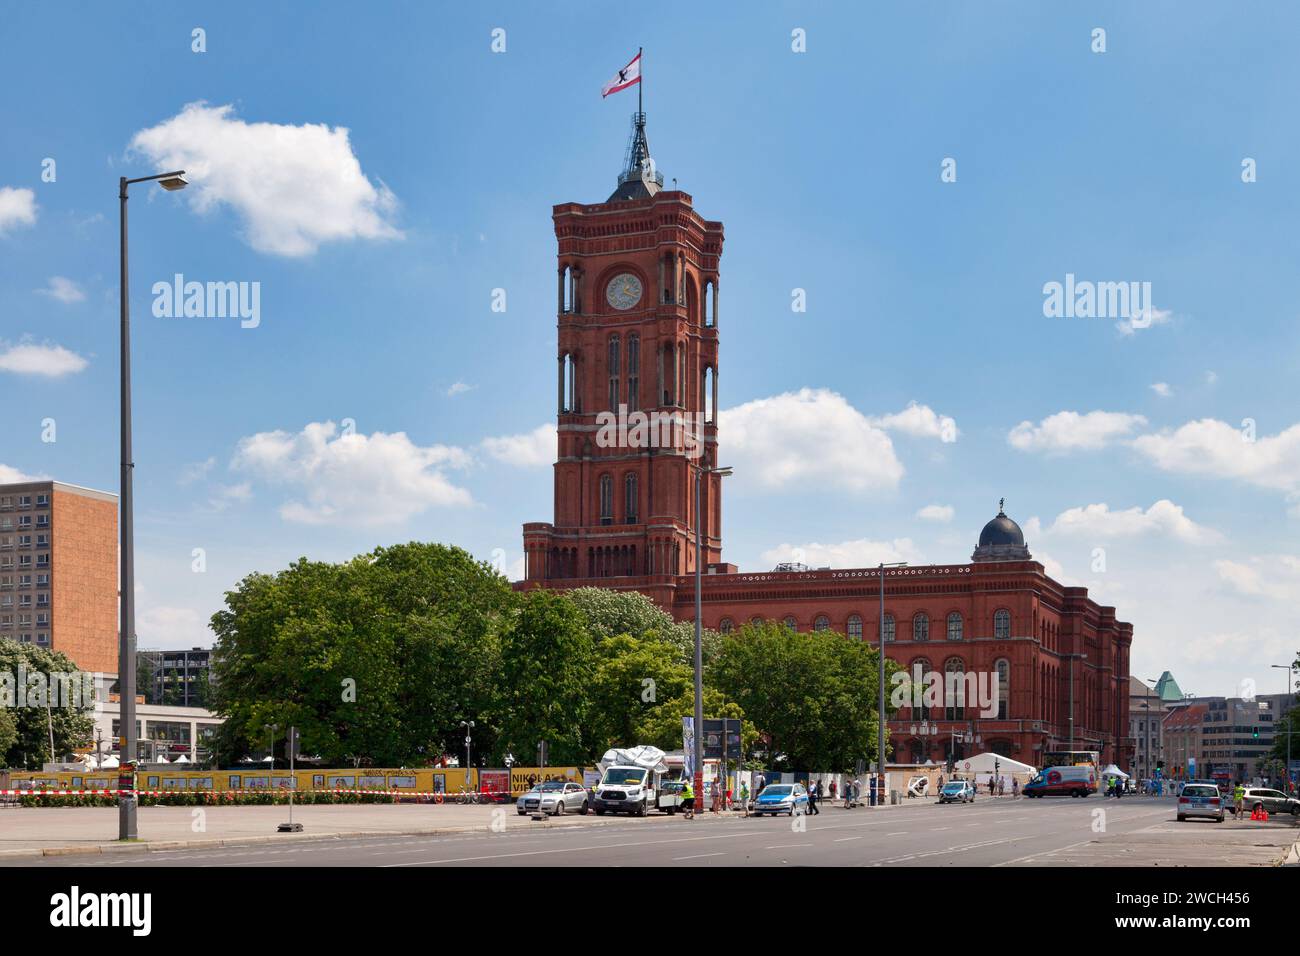 Berlino, Germania - 01 giugno 2019: Il Rotes Rathaus (Municipio Rosso) è il municipio di Berlino, situato nel quartiere Mitte. E' la casa del gov Foto Stock